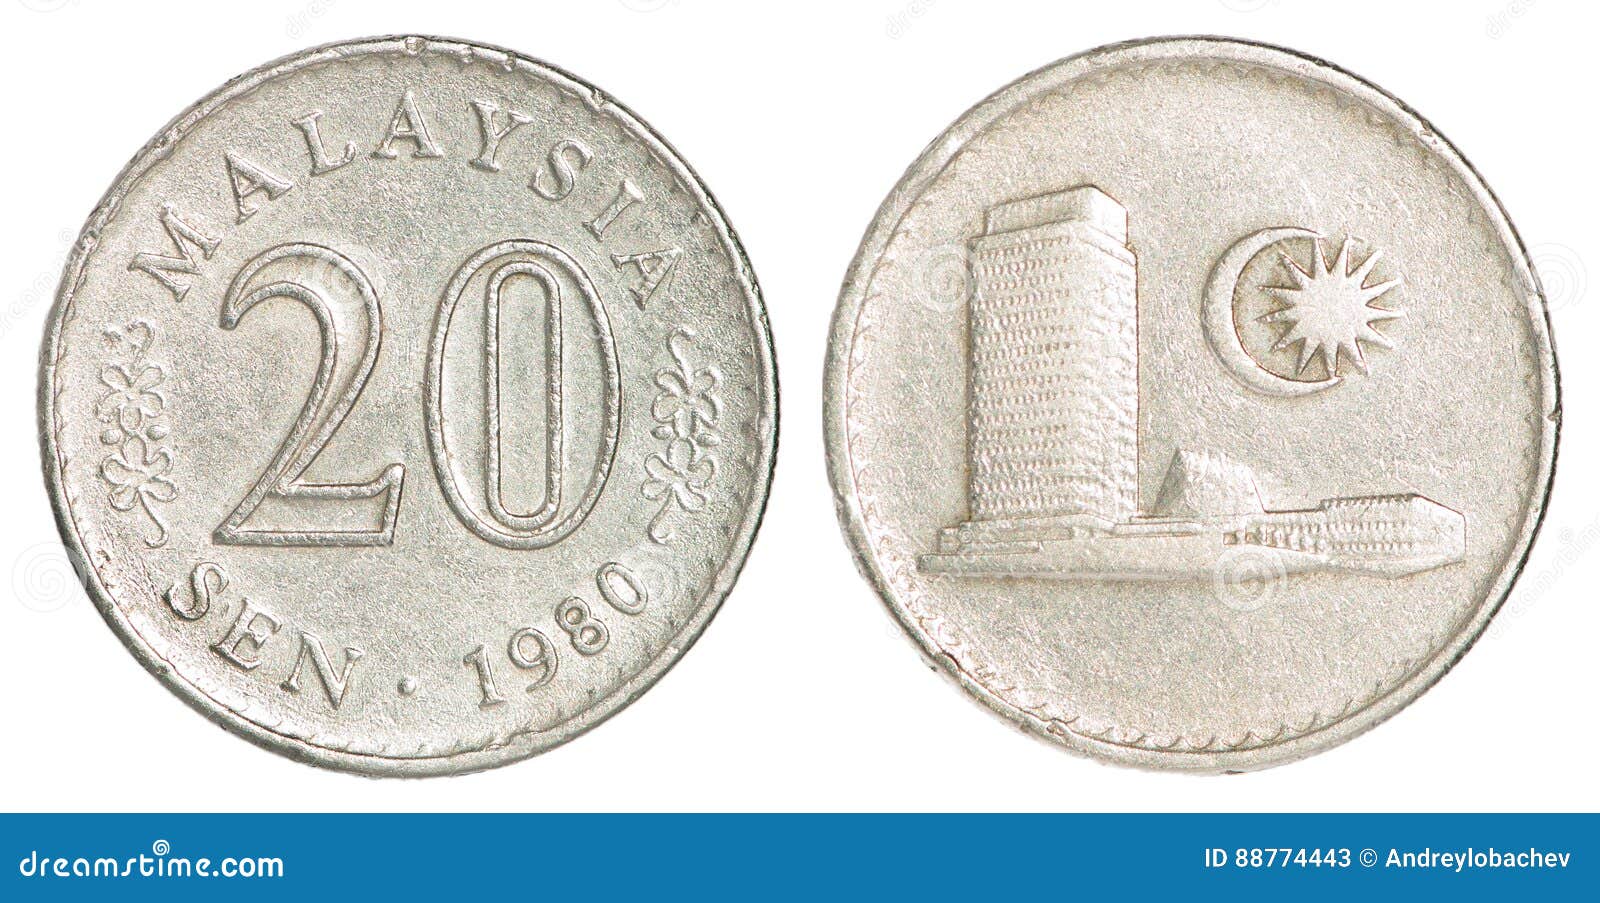 马来西亚20仙硬币,外国钱币,亚洲钱币,普通币/钞,普通金属币,单枚,se11789420,零售,7788收藏__收藏热线